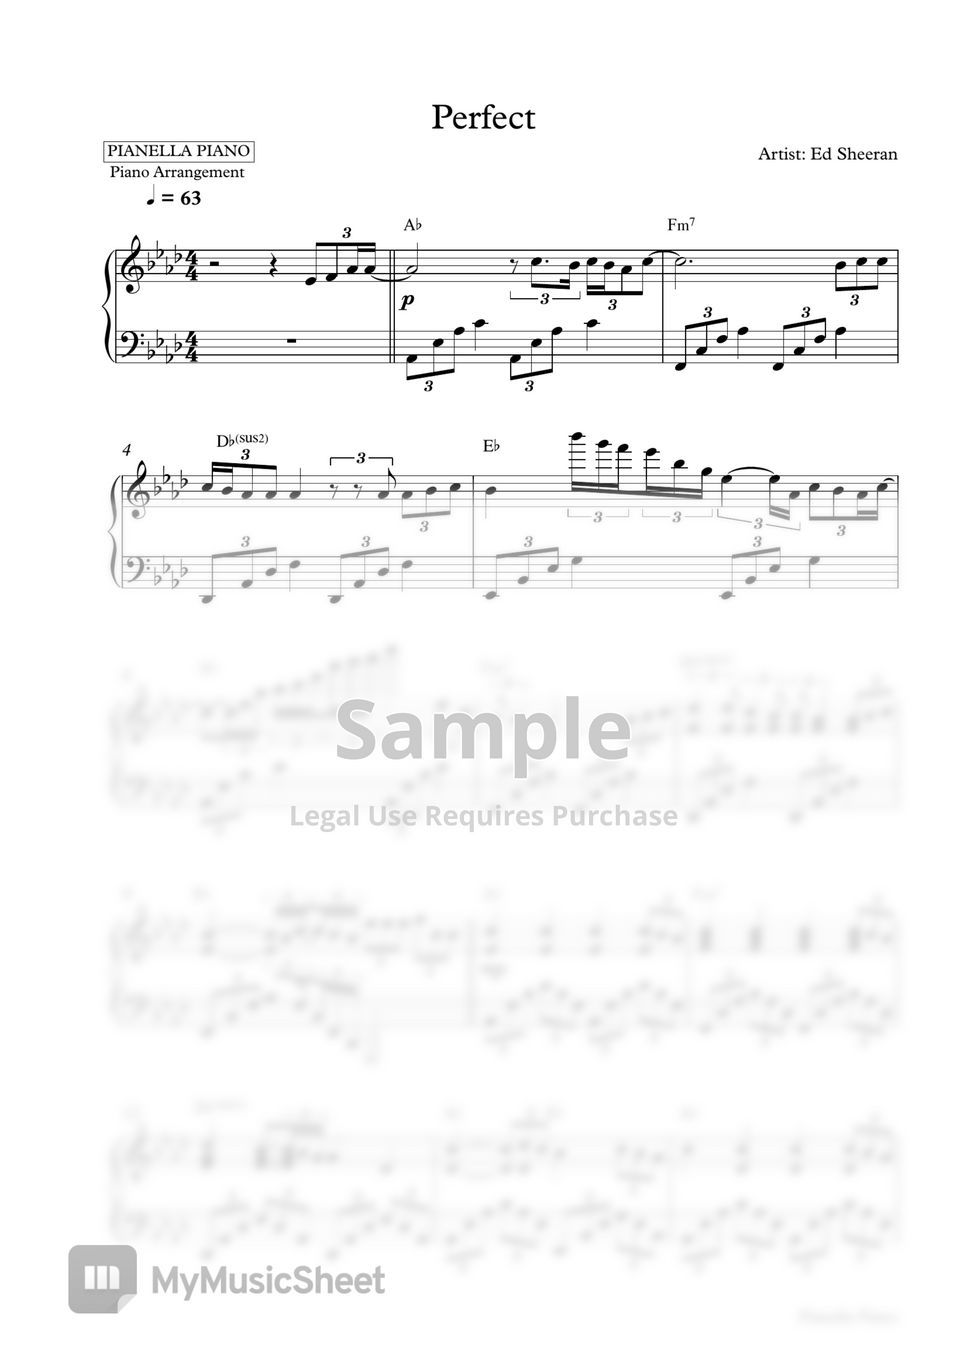 Pianella Piano - Code: Prfct01